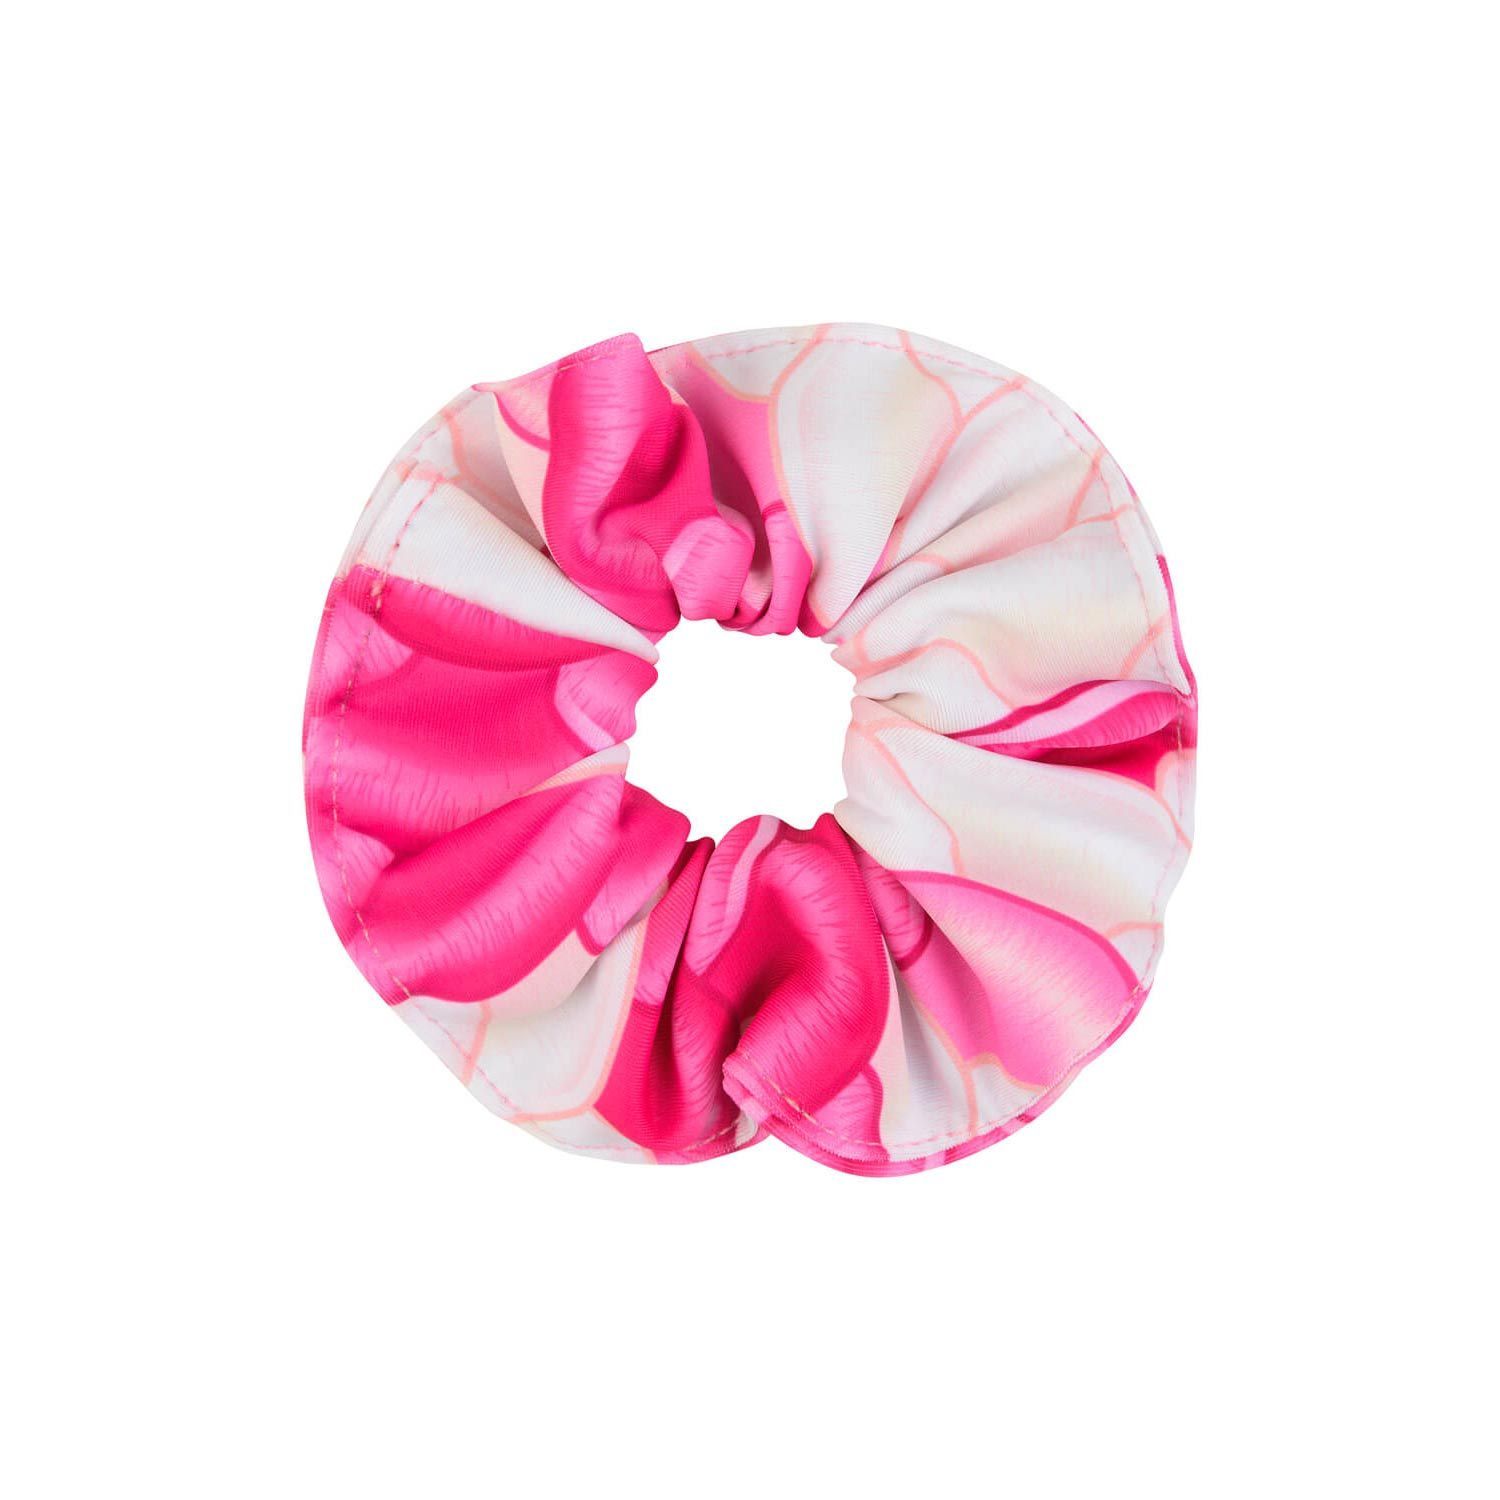 Chelsea Pink Rose Mermaid hair scrunchie